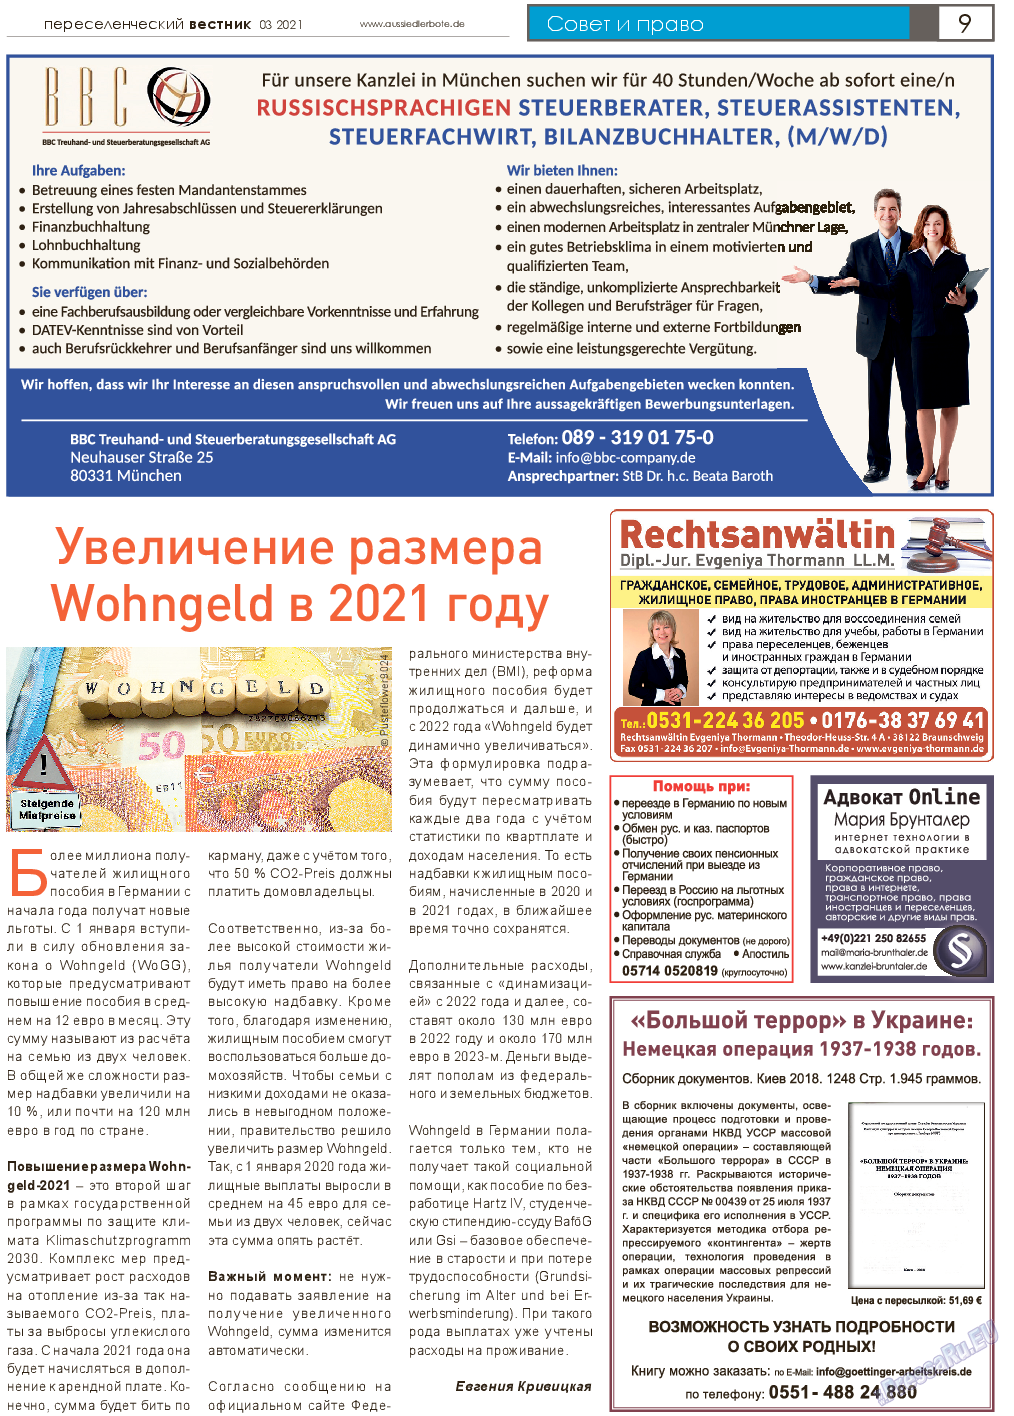 Переселенческий вестник, газета. 2021 №3 стр.9